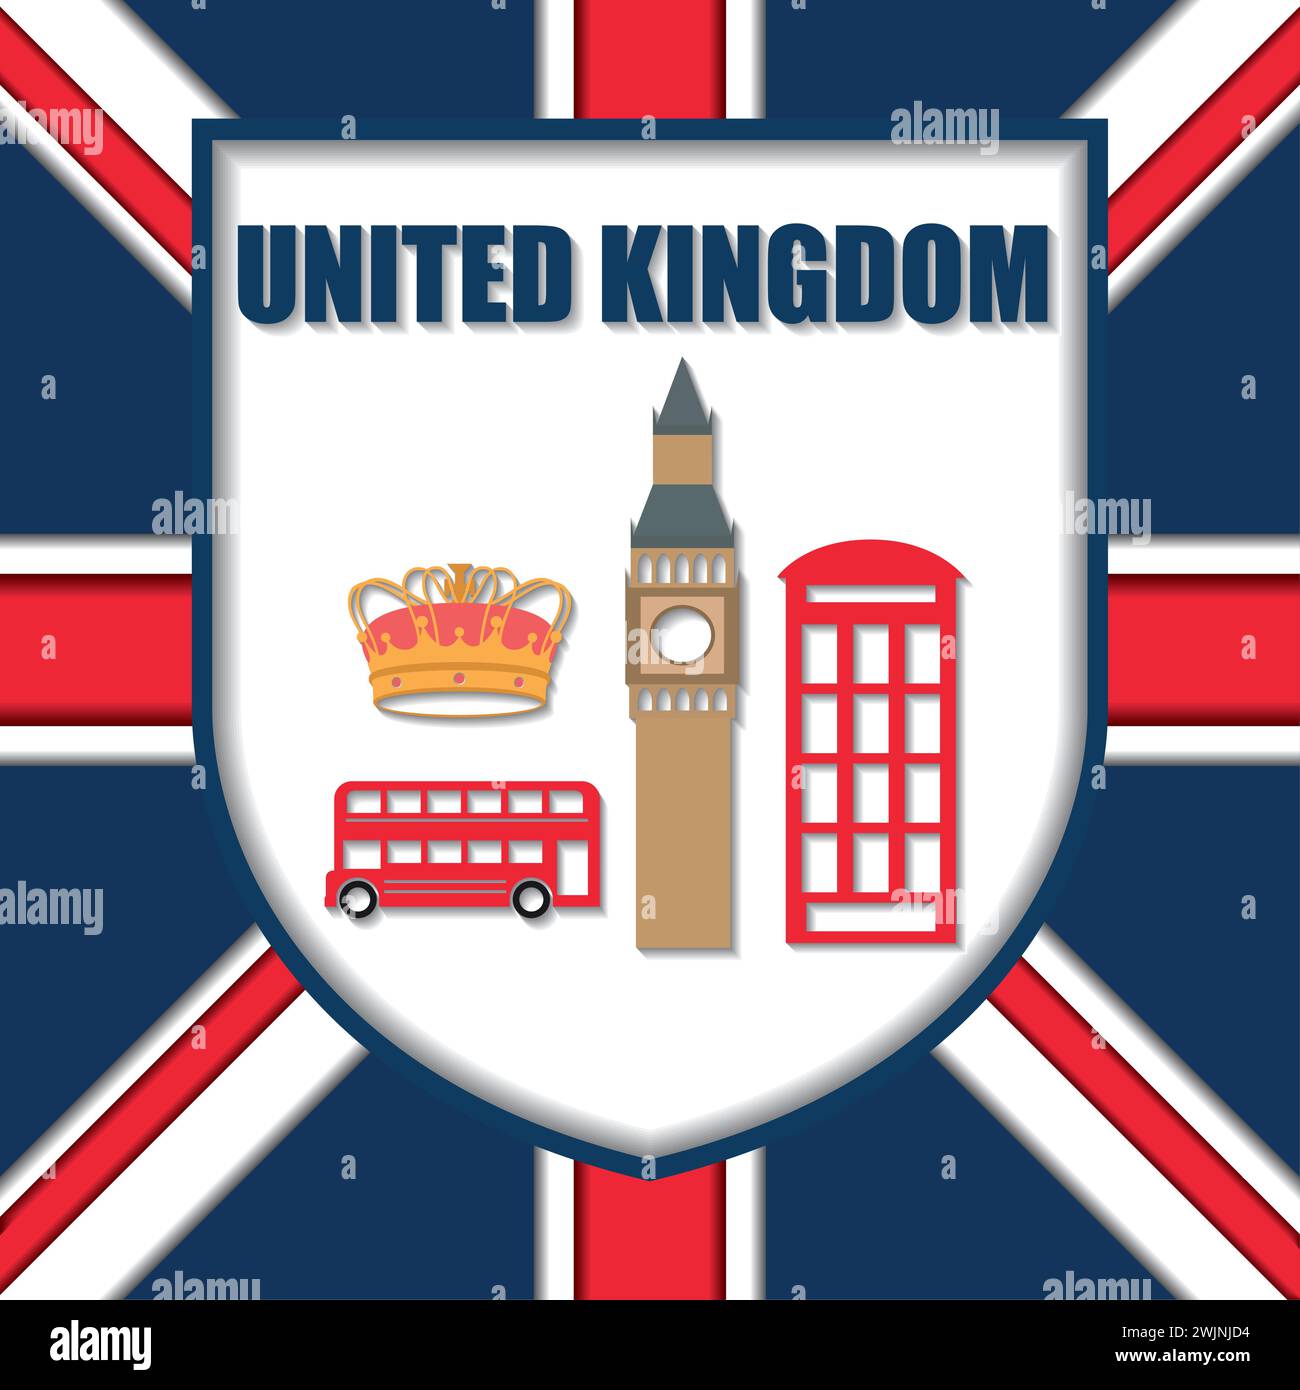 Traditionelle britische Wahrzeichen und Objekte Vereinigte Königreich Reise Postkarte Vektor Stock Vektor